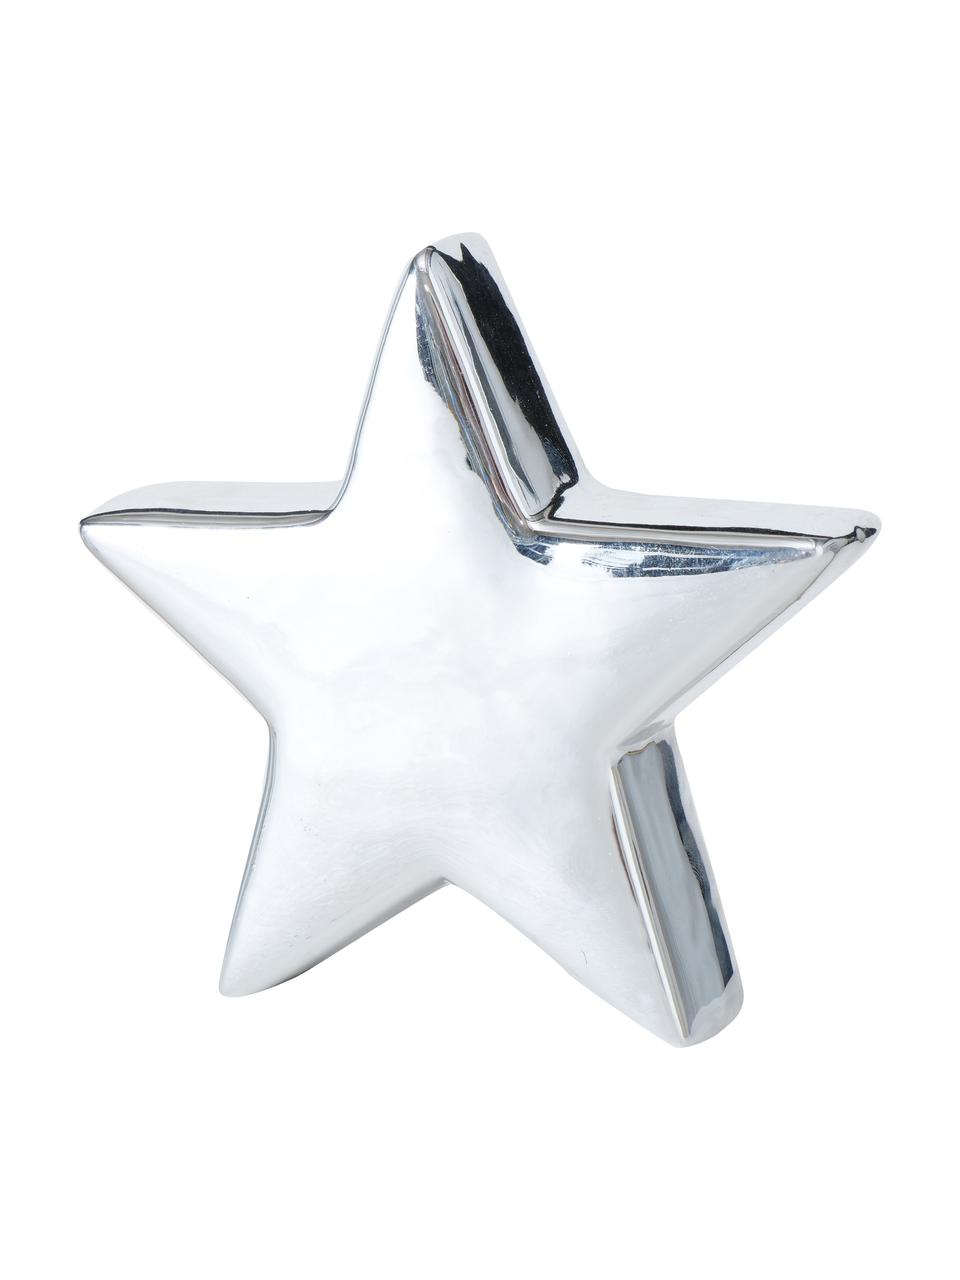 Deko-Sterne Glimmy in Silber H 14 cm, 2 Stück, Steingut, Silberfarben, Weiß, B 14 x H 14 x T 3 cm